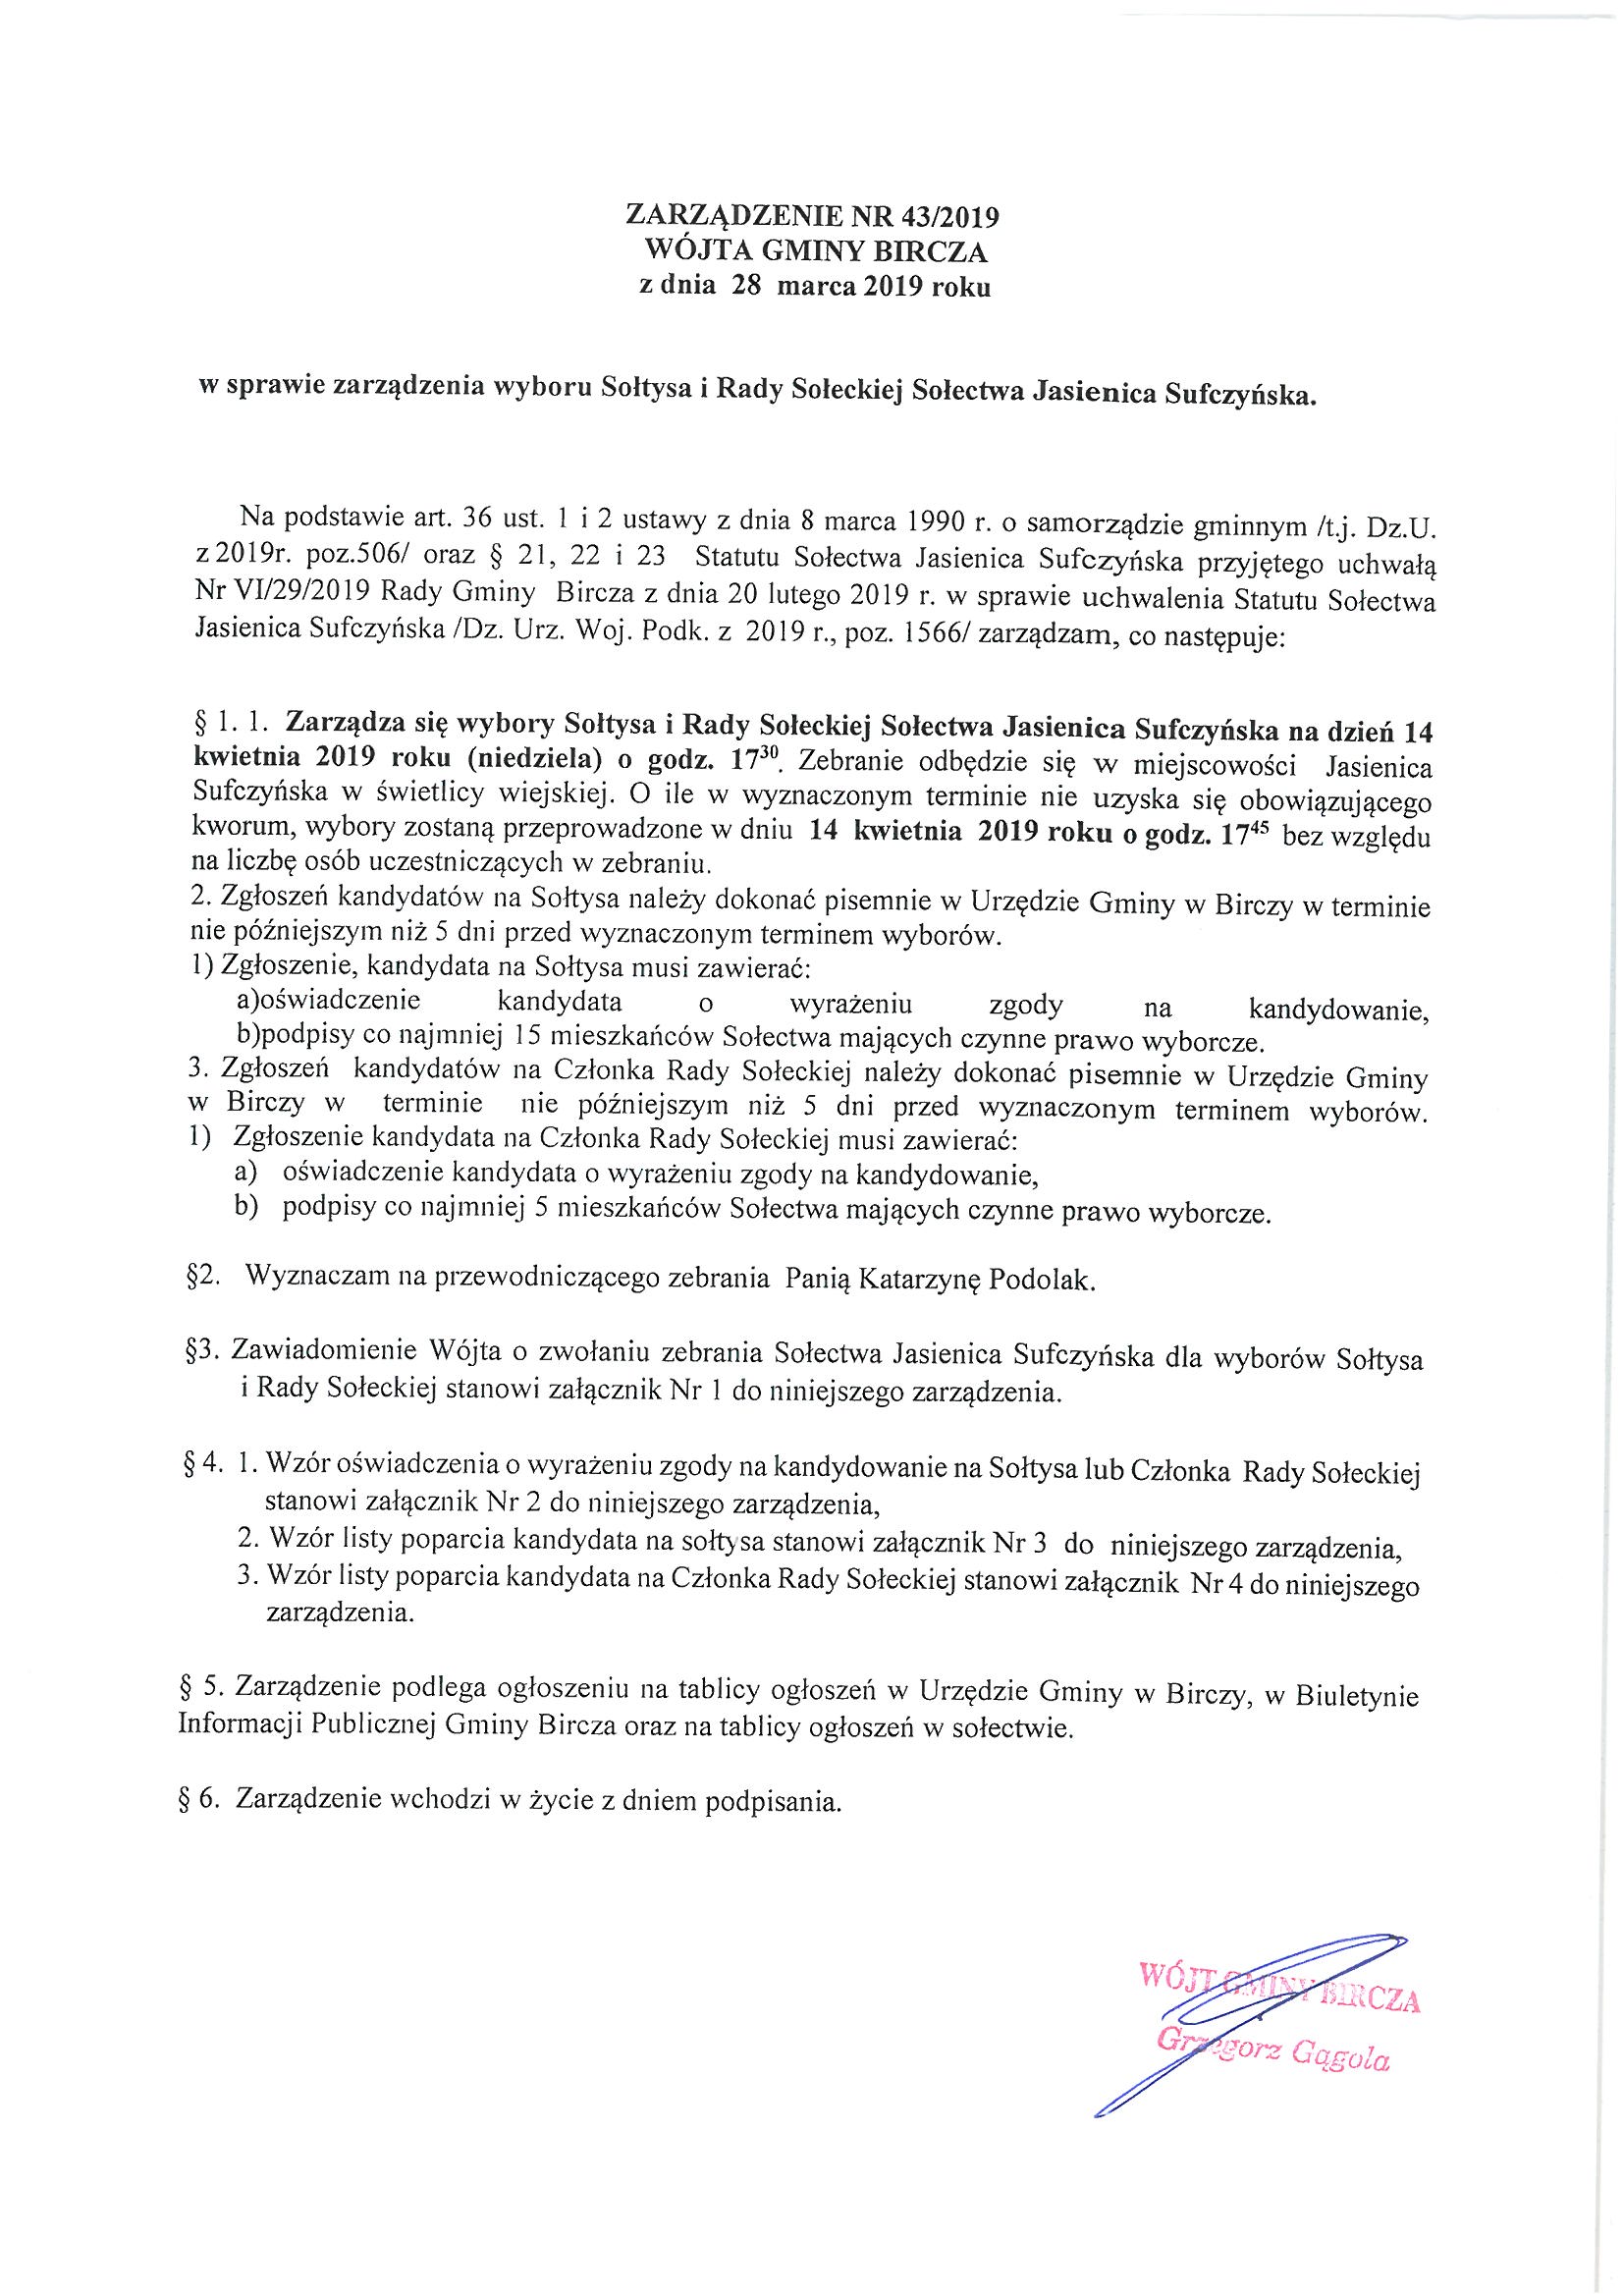 ------- Zarządzenie w sprawie wyboru Sołtysa i Rady Sołeckiej Jasienica Sufczyńska.jpg